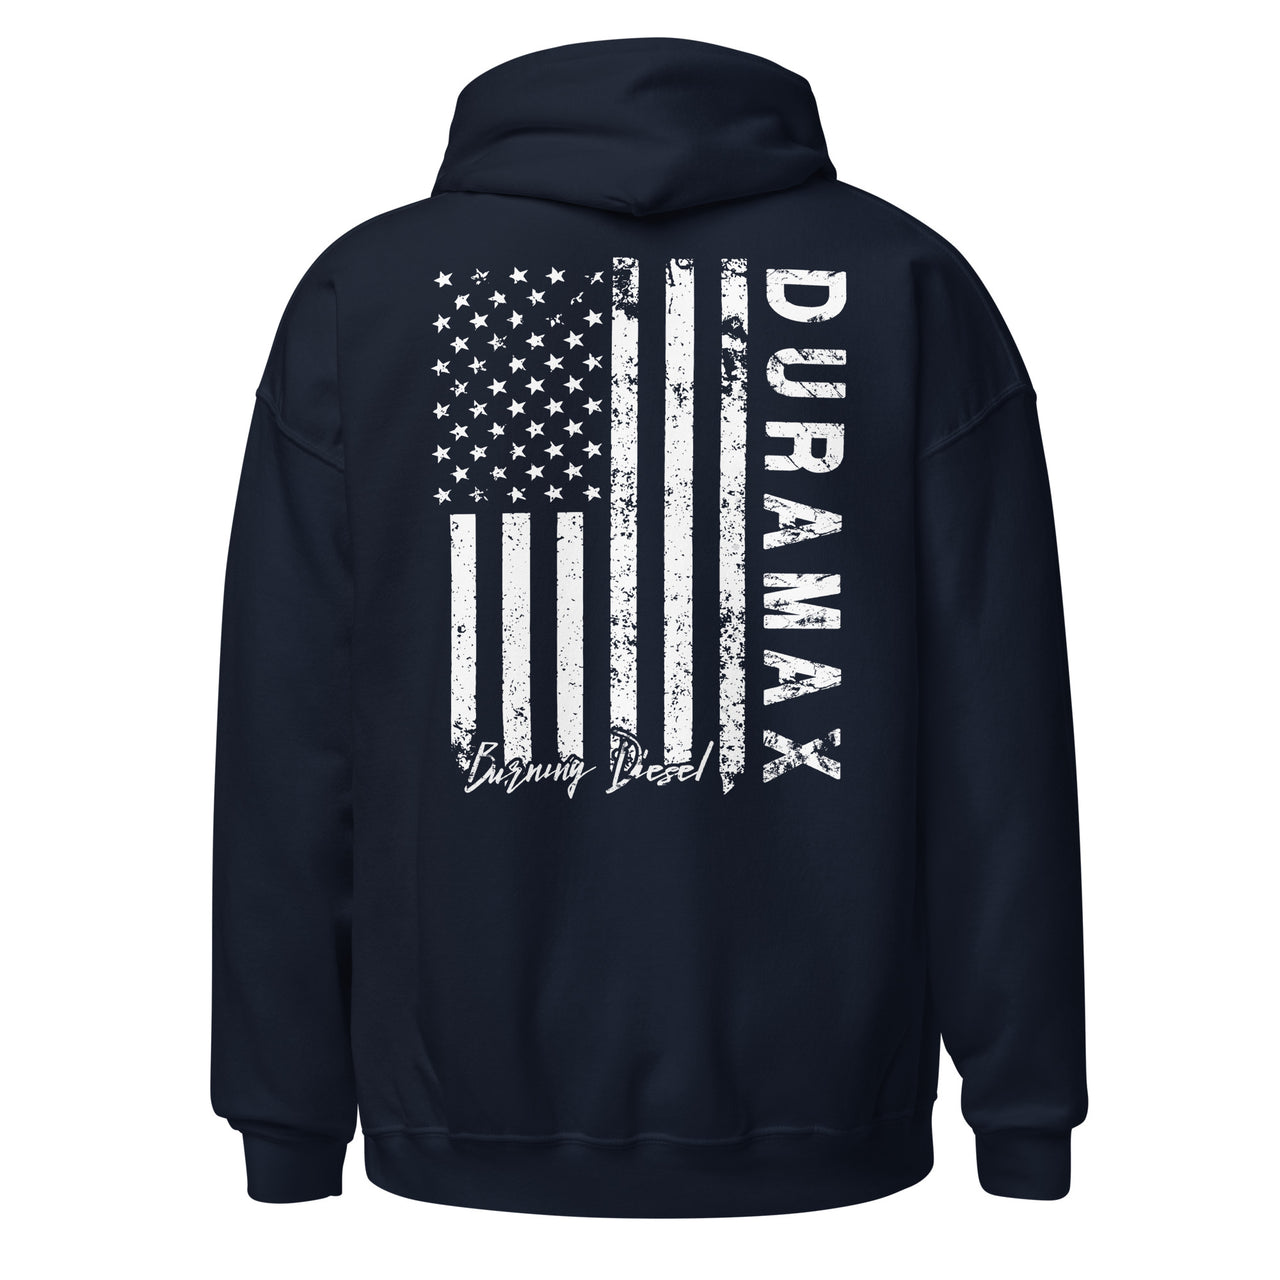 LZO 3.0 Duramax Hoodie Sweatshirt With American Flag Design back in navy